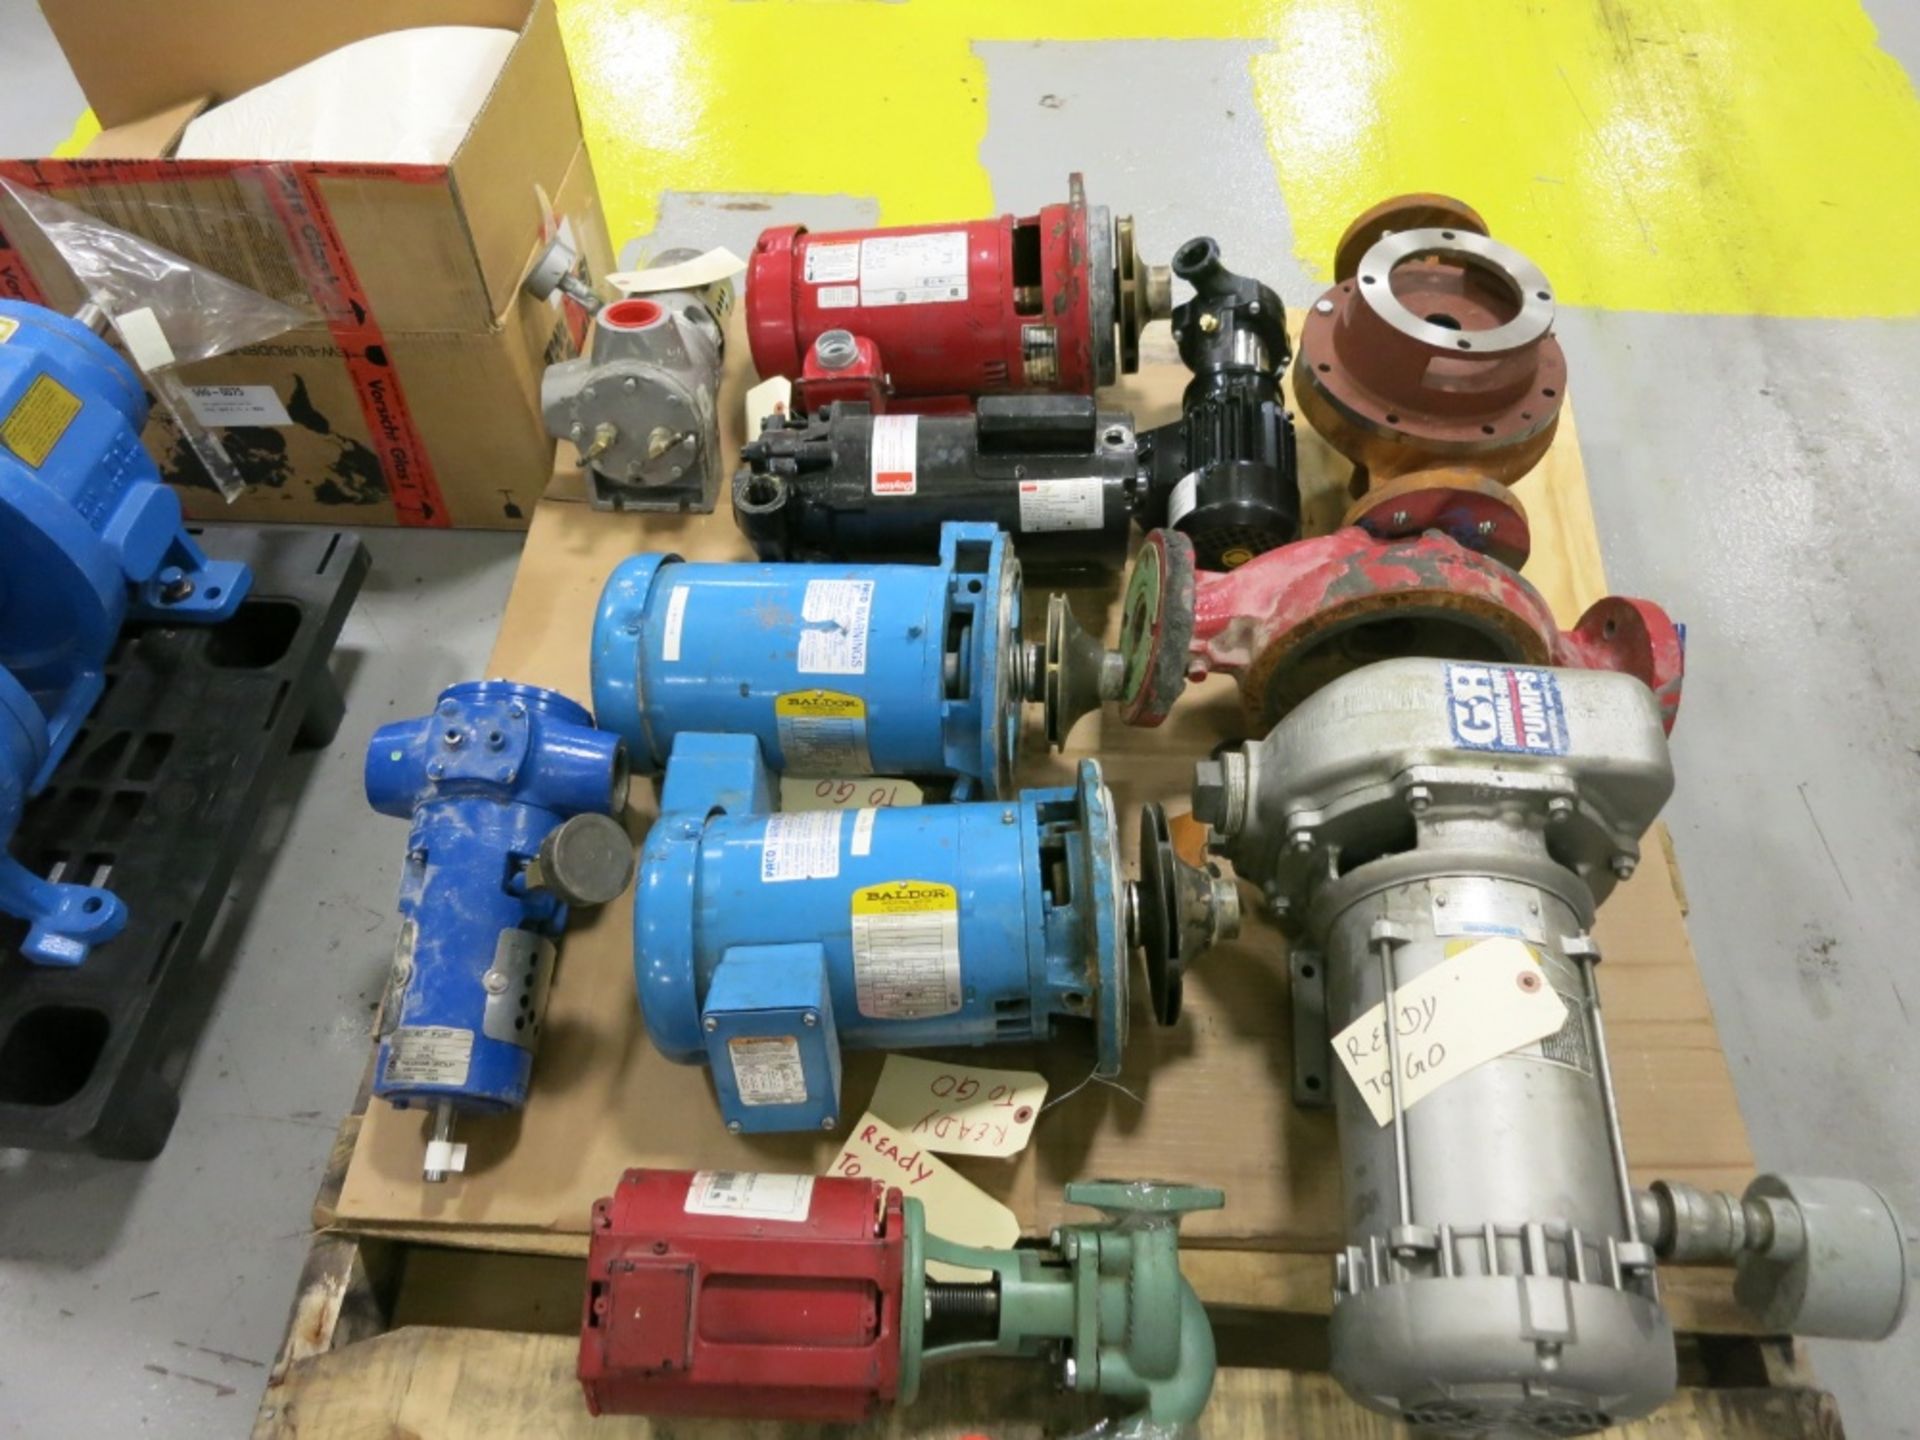 Pumps, motors and parts